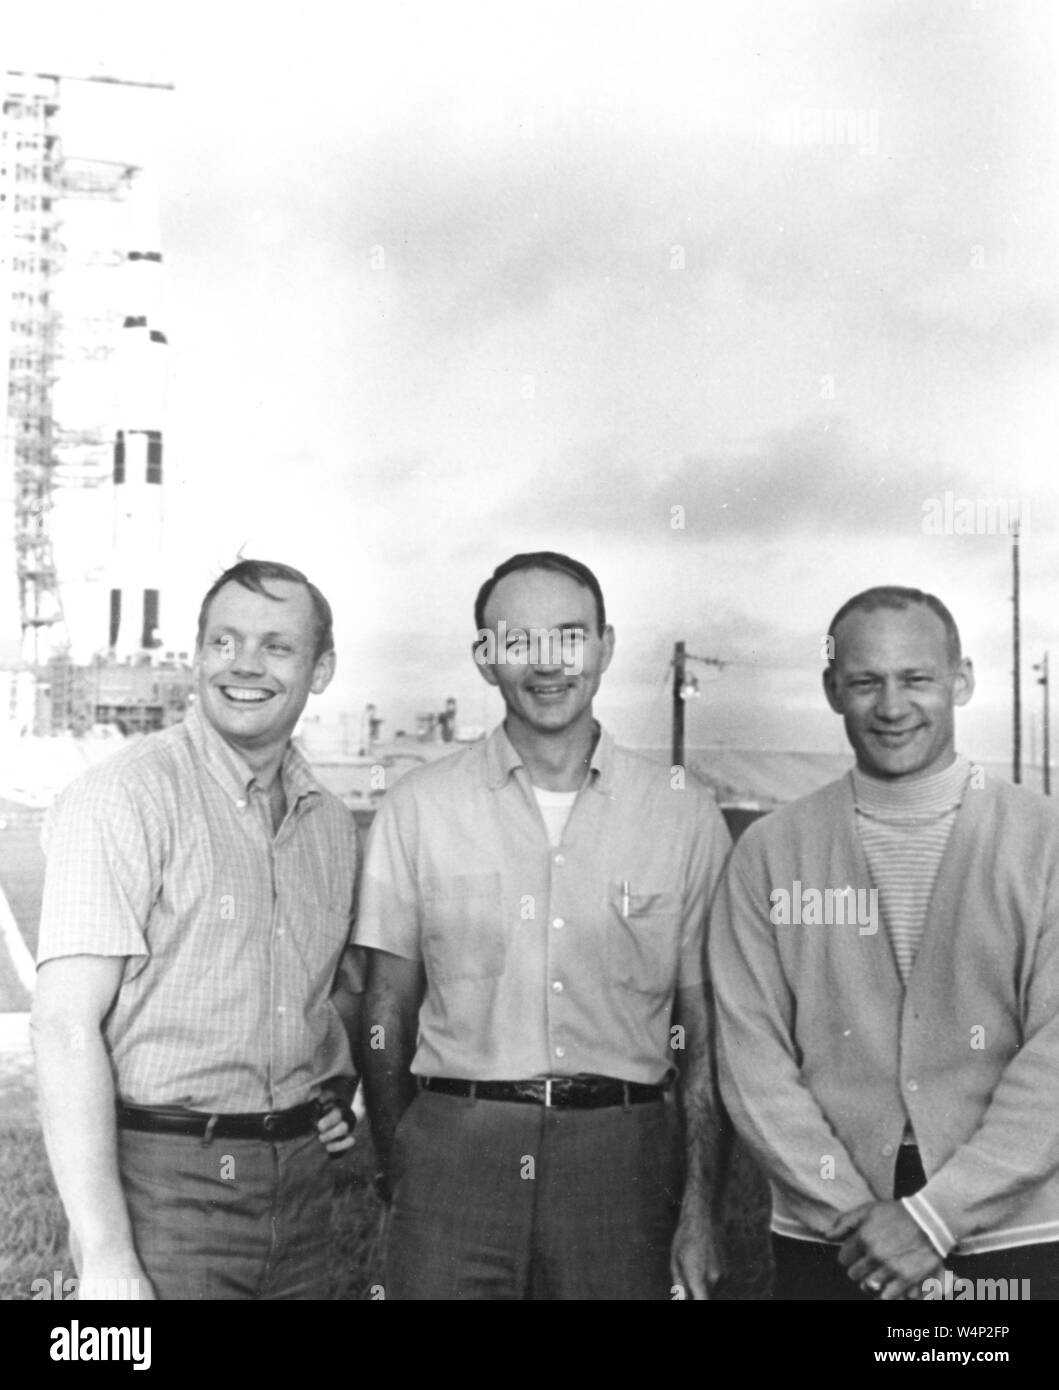 NASA Apollo 11 l'equipaggio di volo, a Neil Armstrong, Michael Collins e Buzz Aldrin, sostare vicino Apollo/Saturn V al Kennedy Space Center in Florida, 16 luglio 1969. Immagine cortesia Nazionale Aeronautica e Spaziale Administration (NASA). () Foto Stock